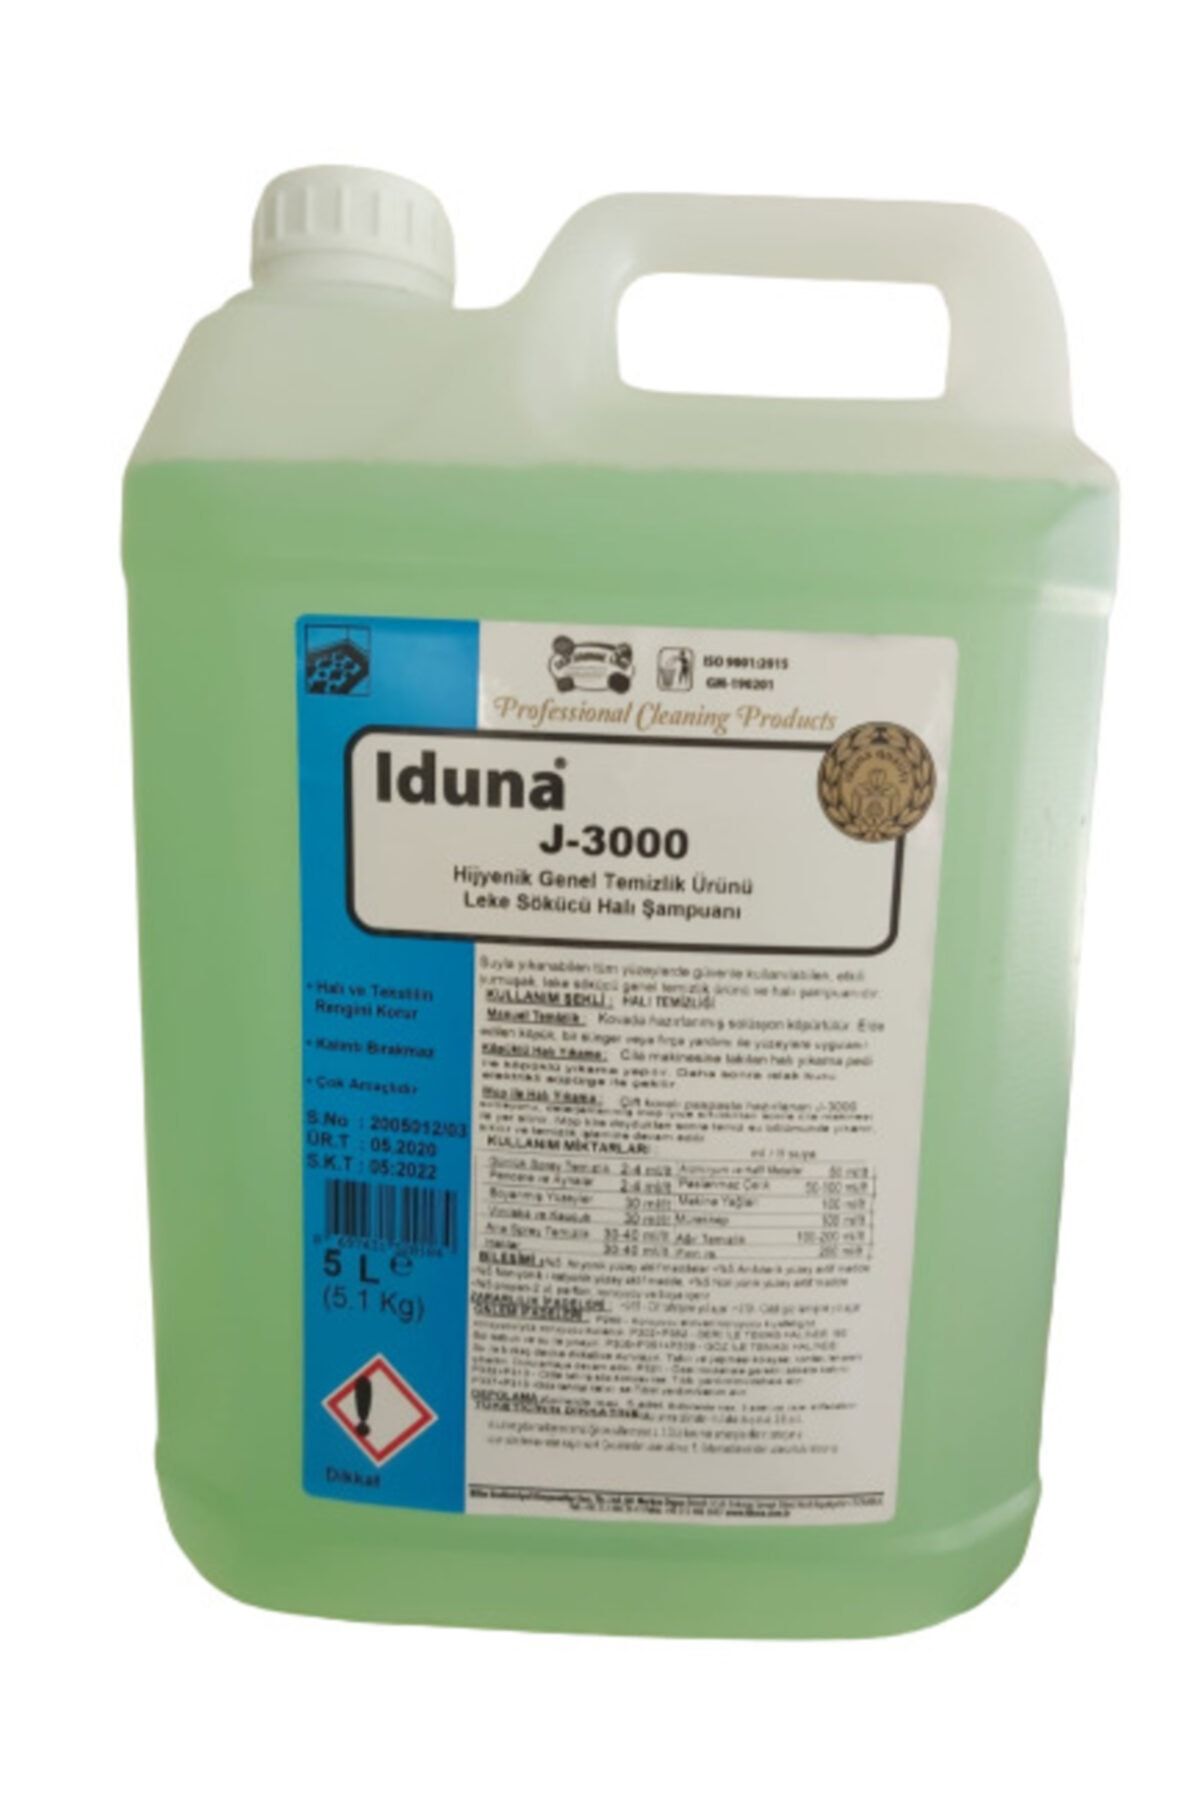 Iduna J-3000 Hijyenik Genel Temizlik Ürünü Leke Sökücü Halı Şampuanı 5 Litre